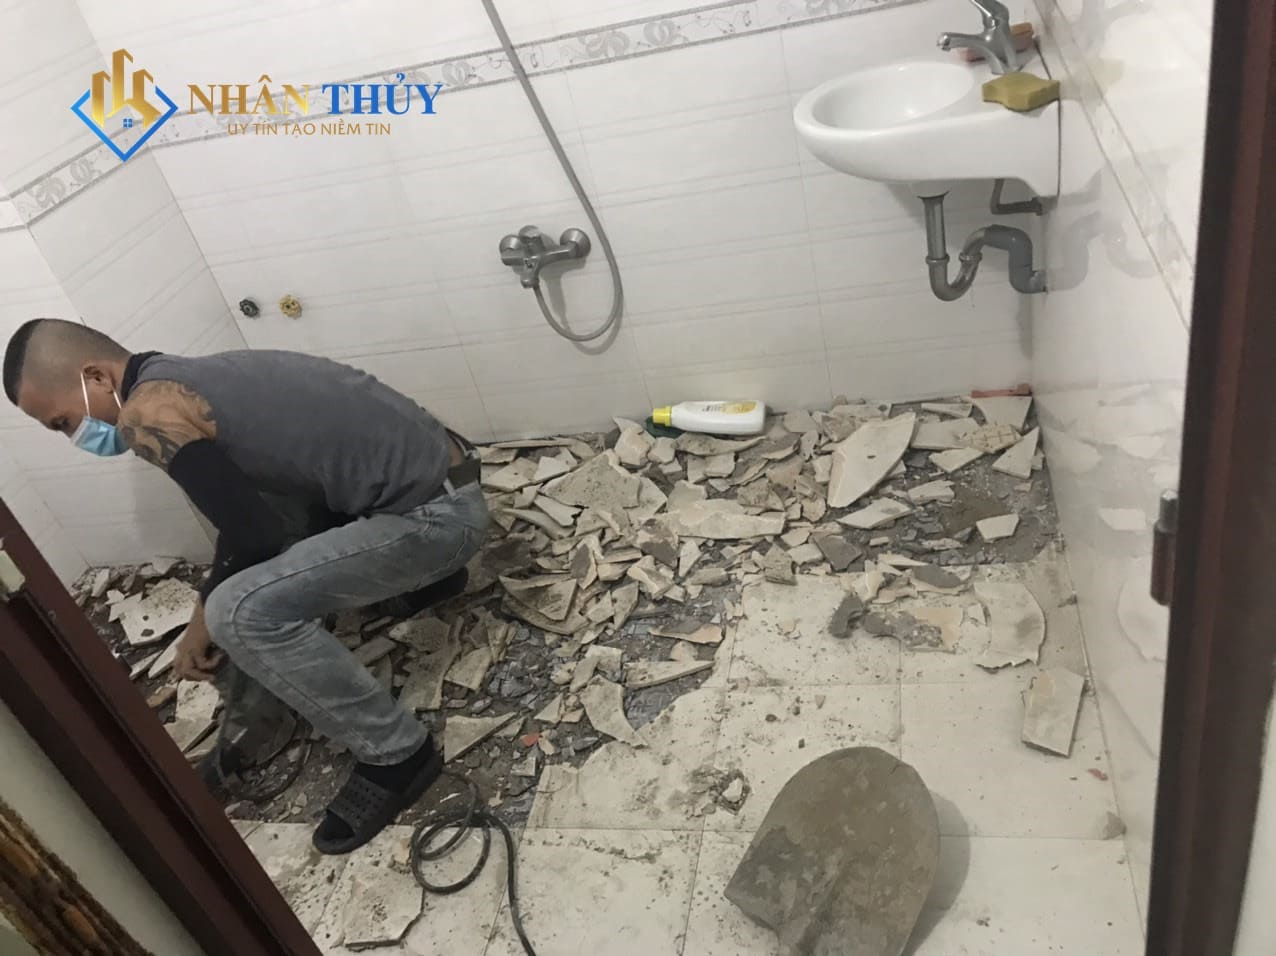 Dự án chống thấm nhà vệ sinh tại Bình Thạnh của Nhân Thuỷ